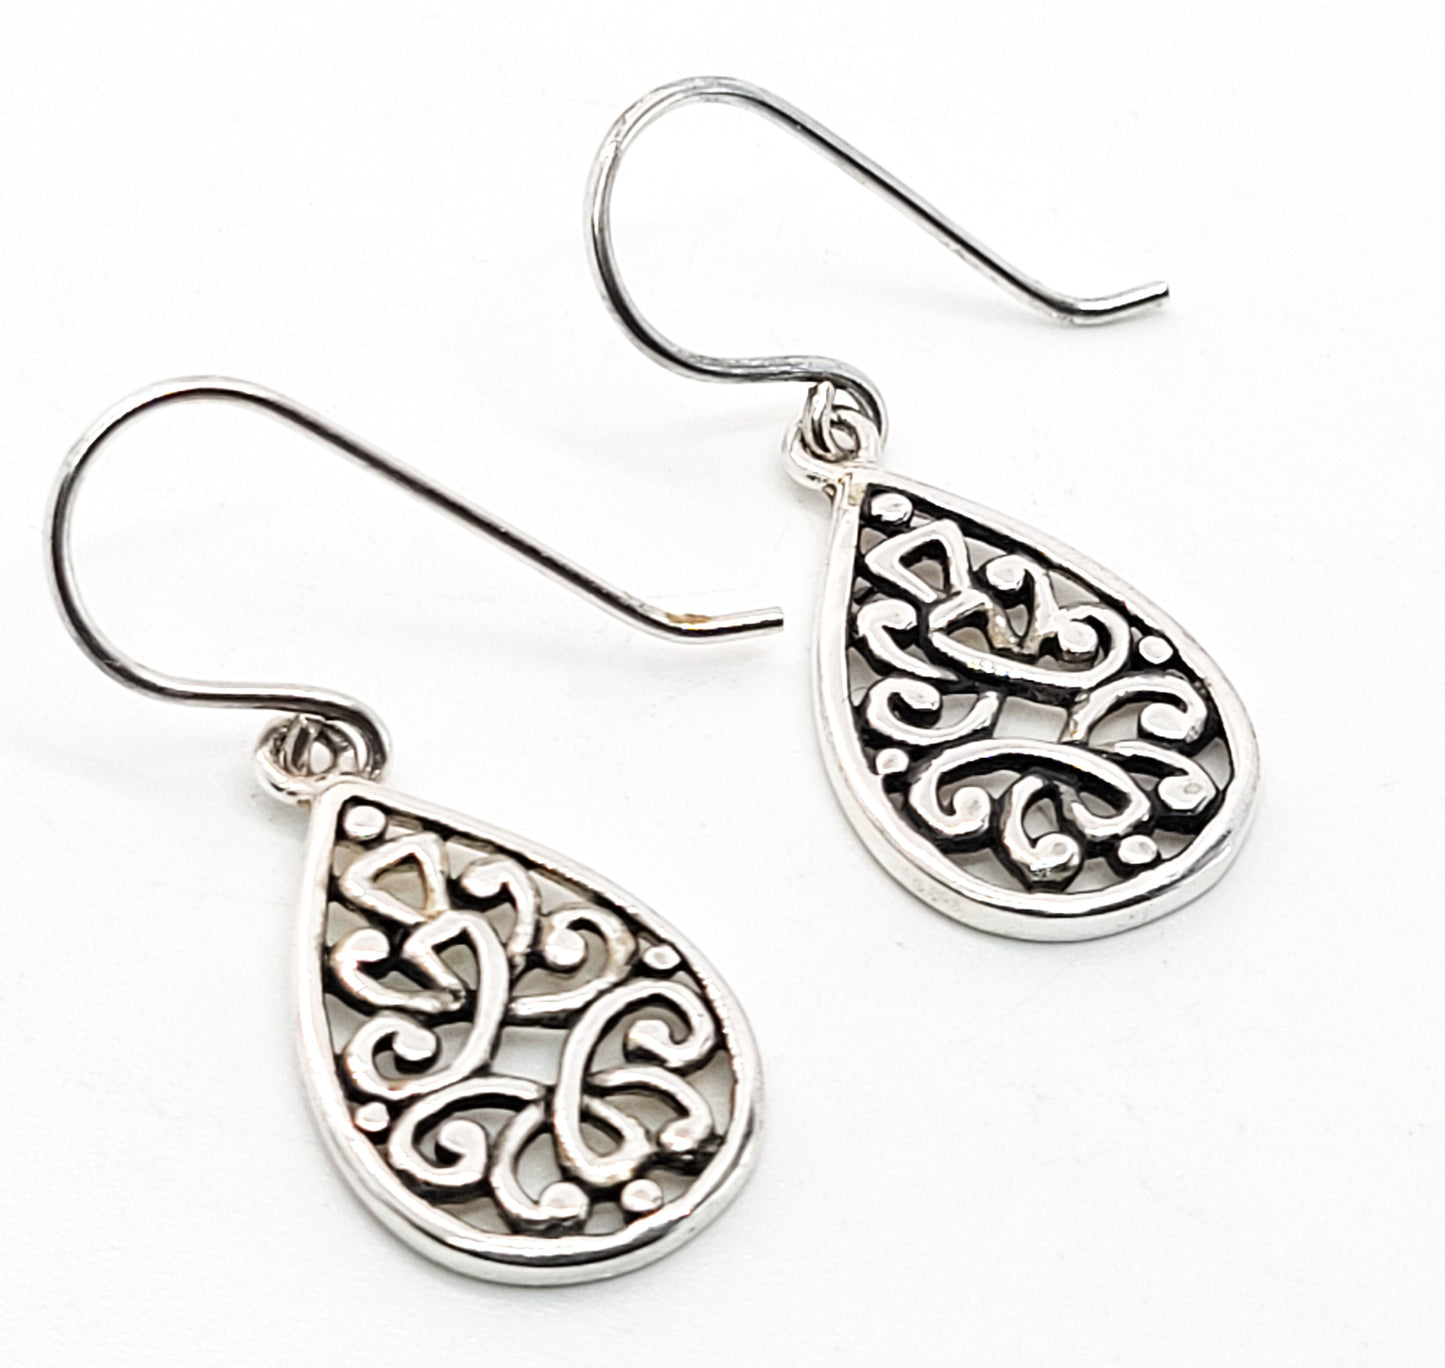 FAS open work filigree teardrop pendant vintage sterling silver earrings